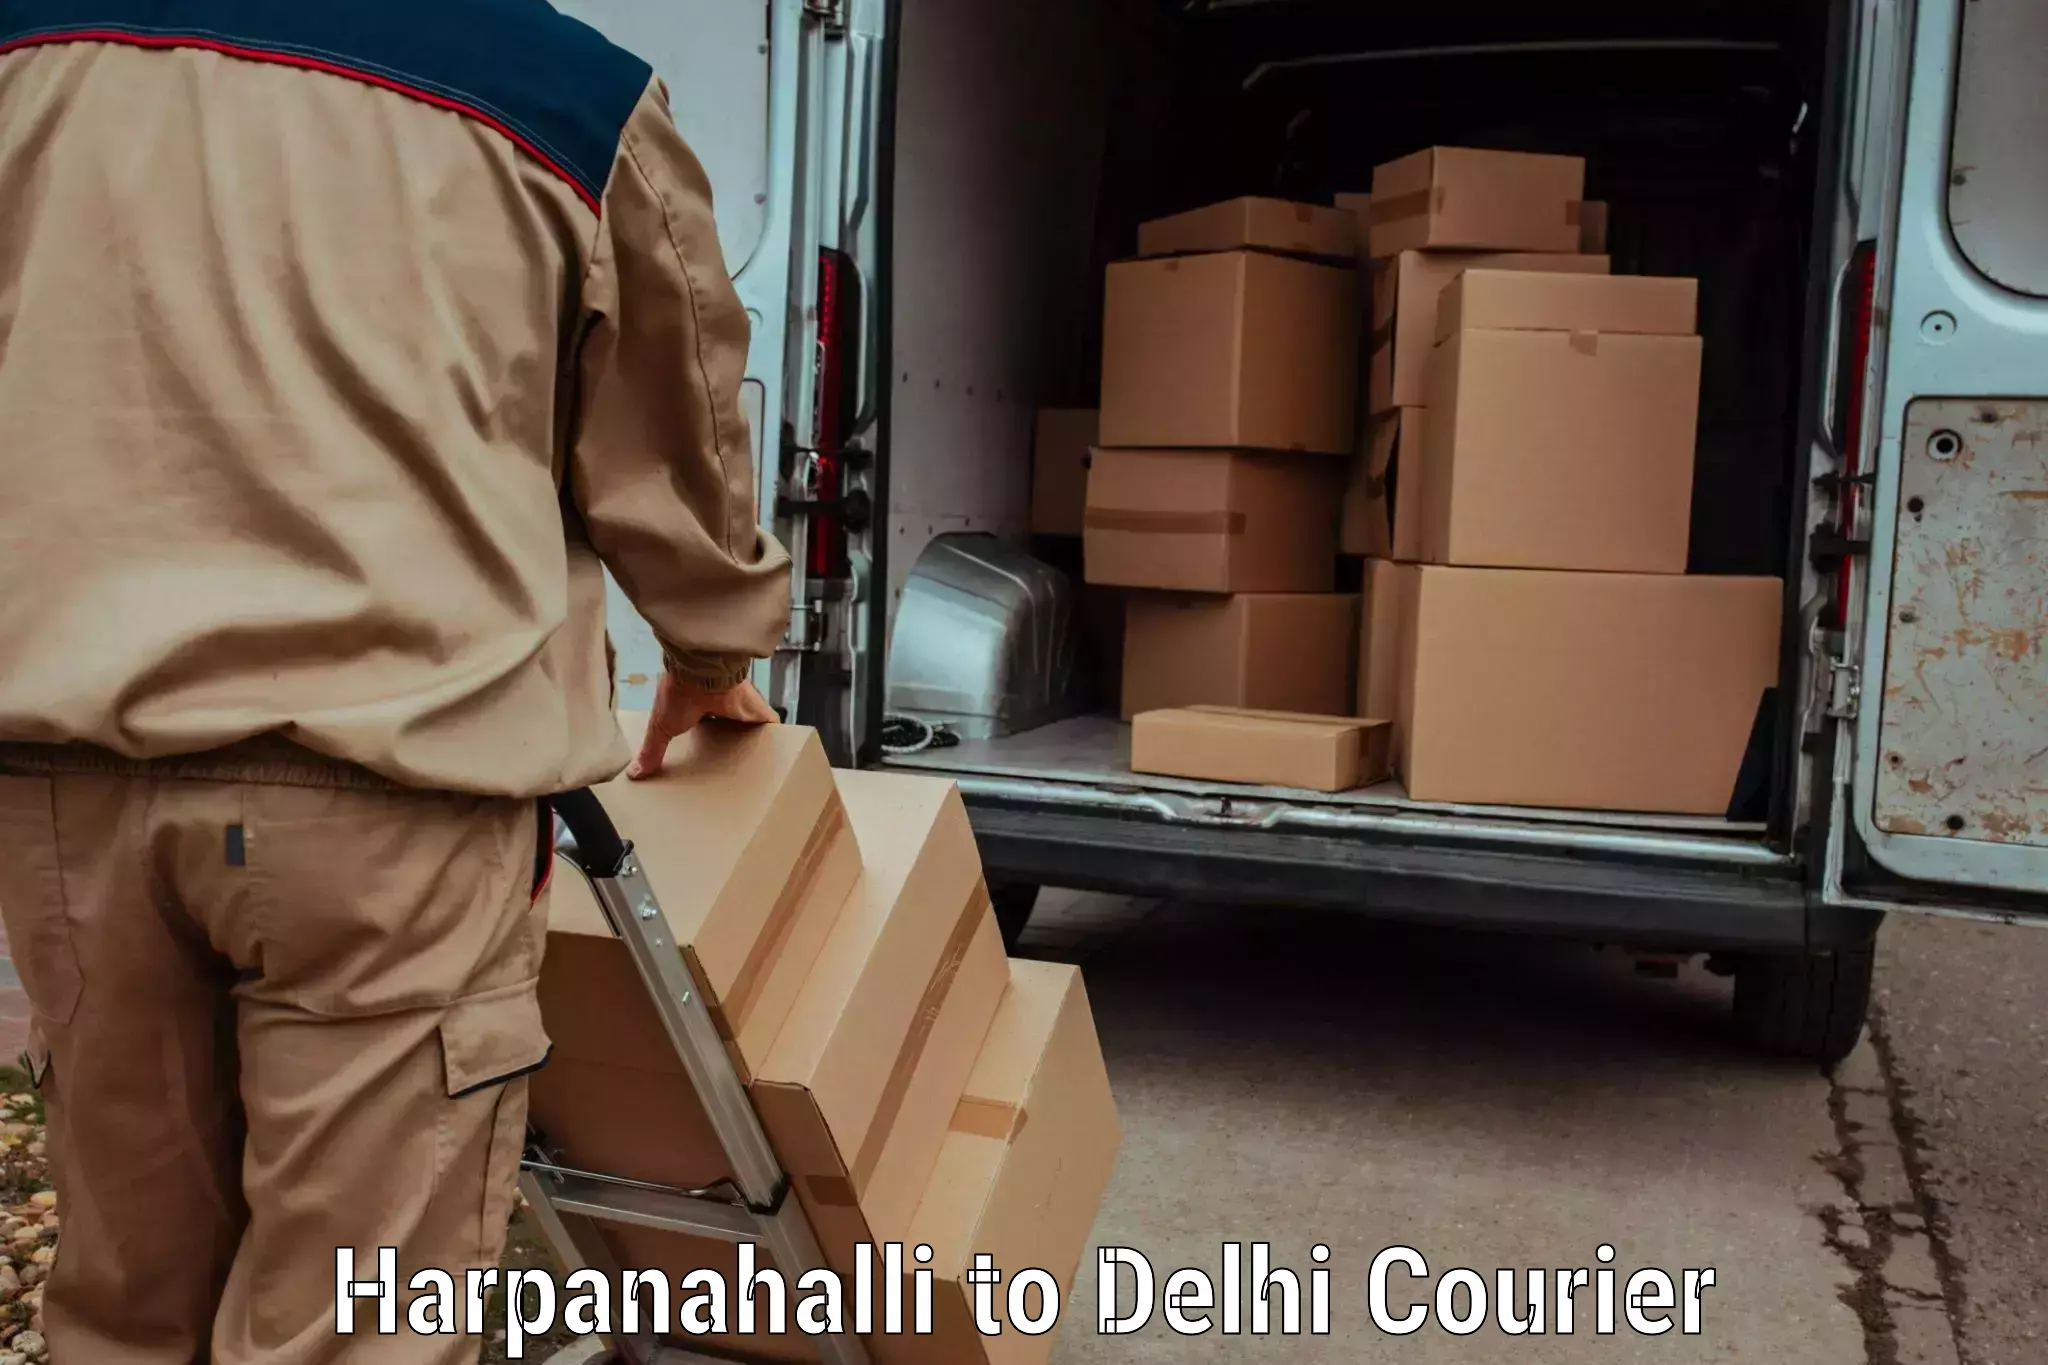 Global shipping networks Harpanahalli to Jamia Millia Islamia New Delhi